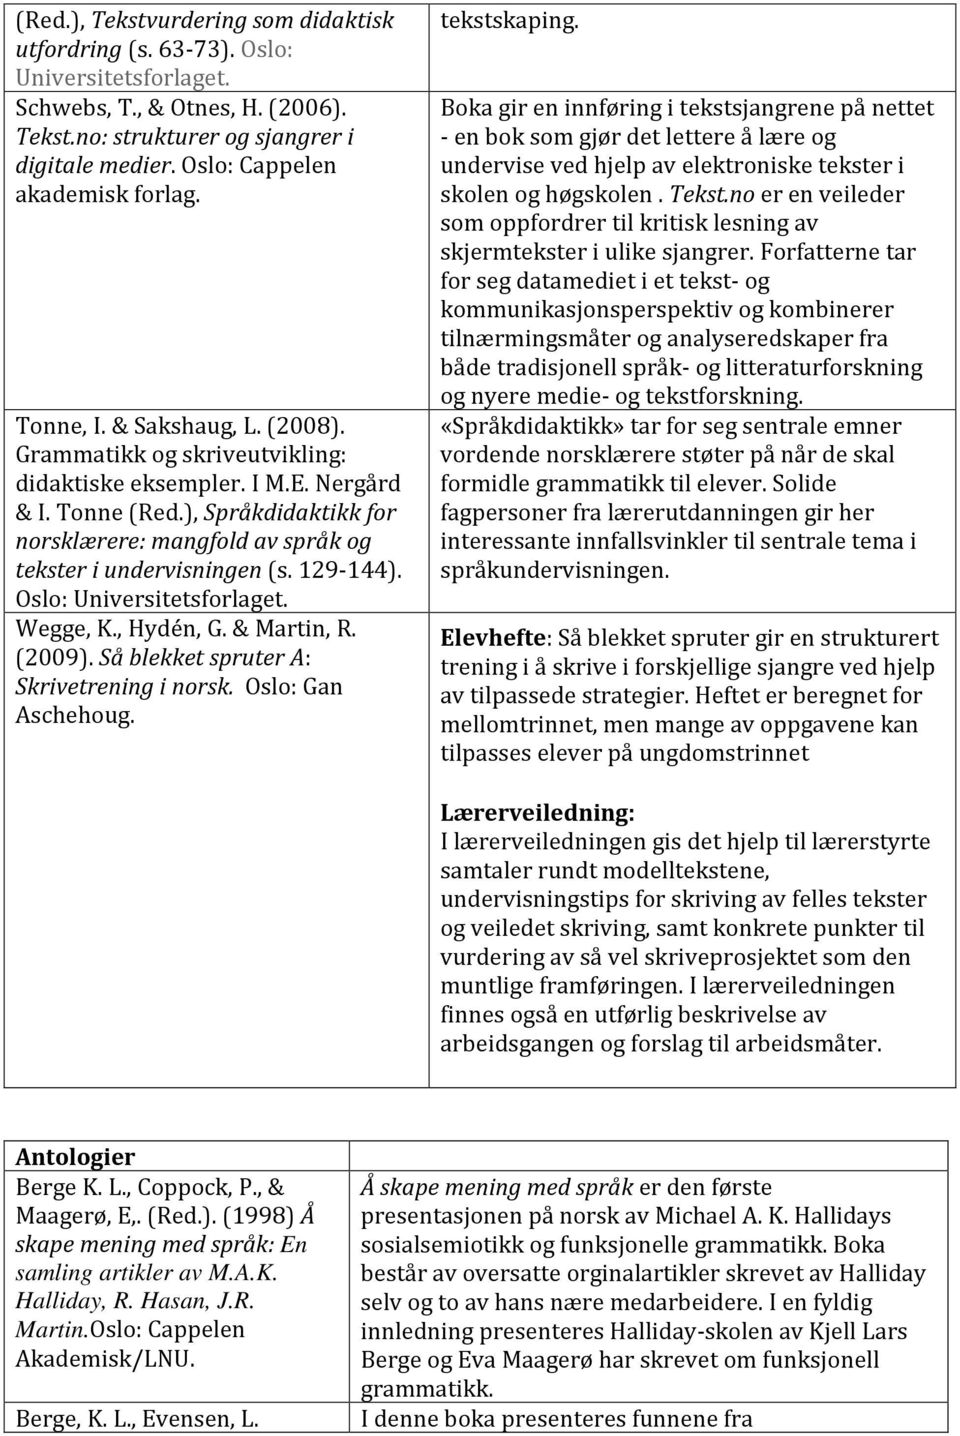 129-144). Oslo: Wegge, K., Hydén, G. & Martin, R. (2009). Så blekket spruter A: Skrivetrening i norsk. Oslo: Gan Aschehoug. tekstskaping.